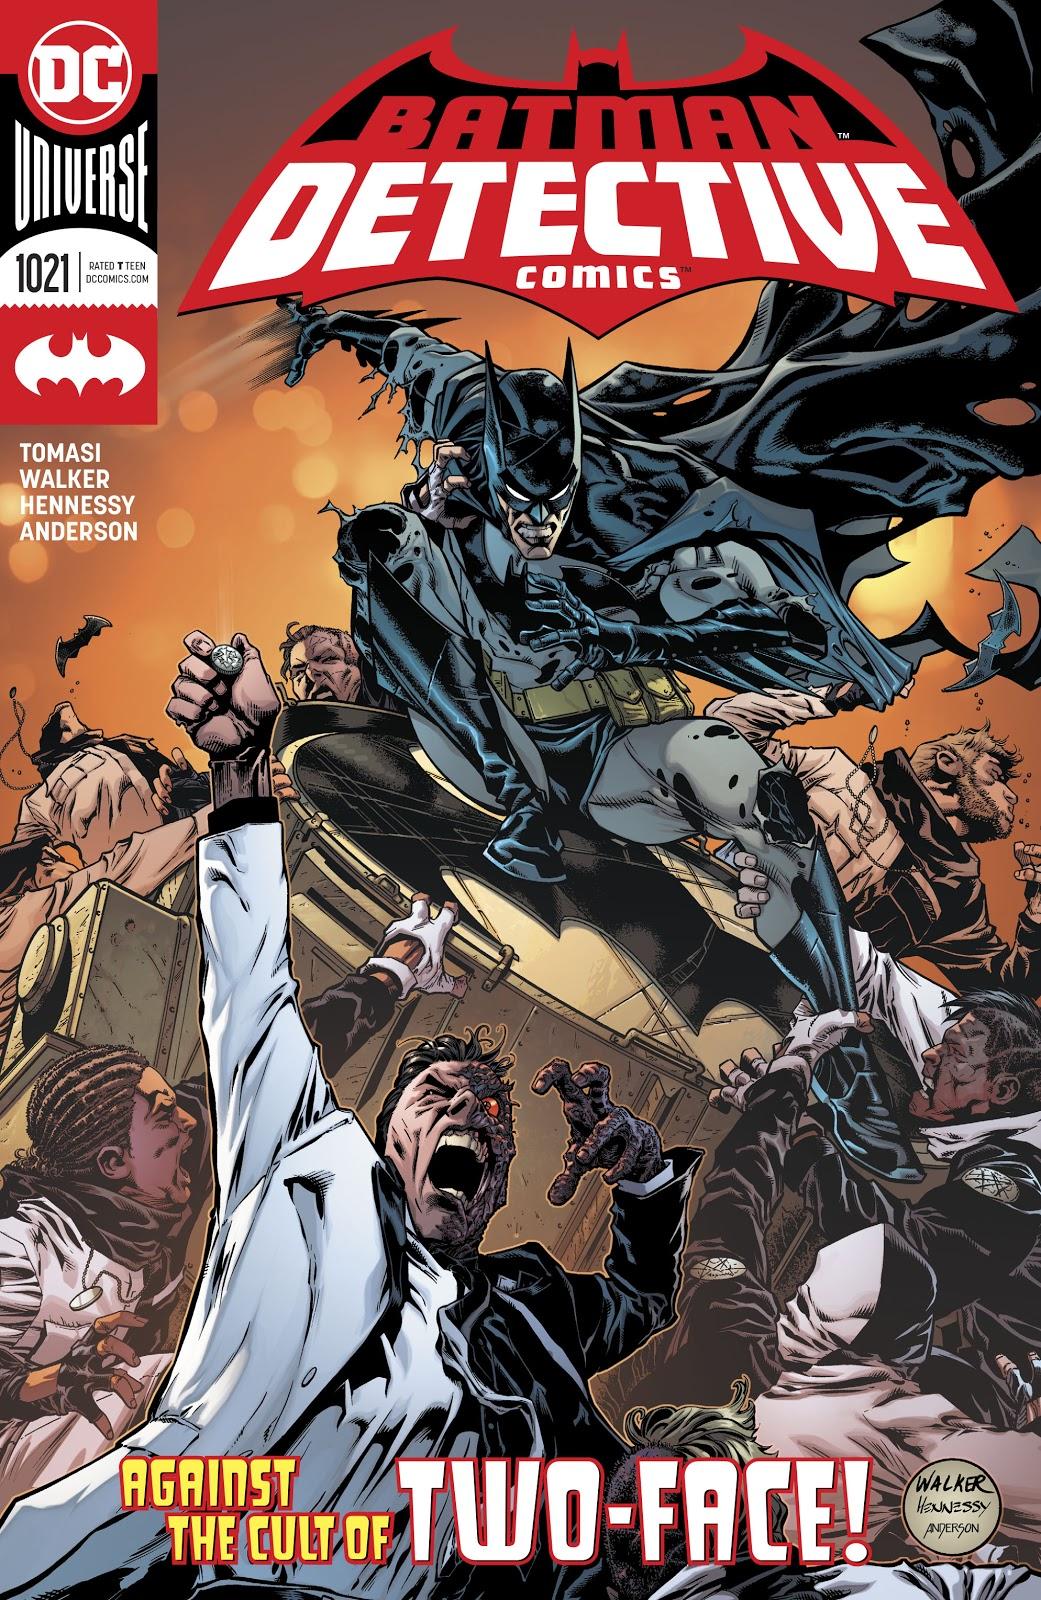 Detective Comics Vol. 1 #1021